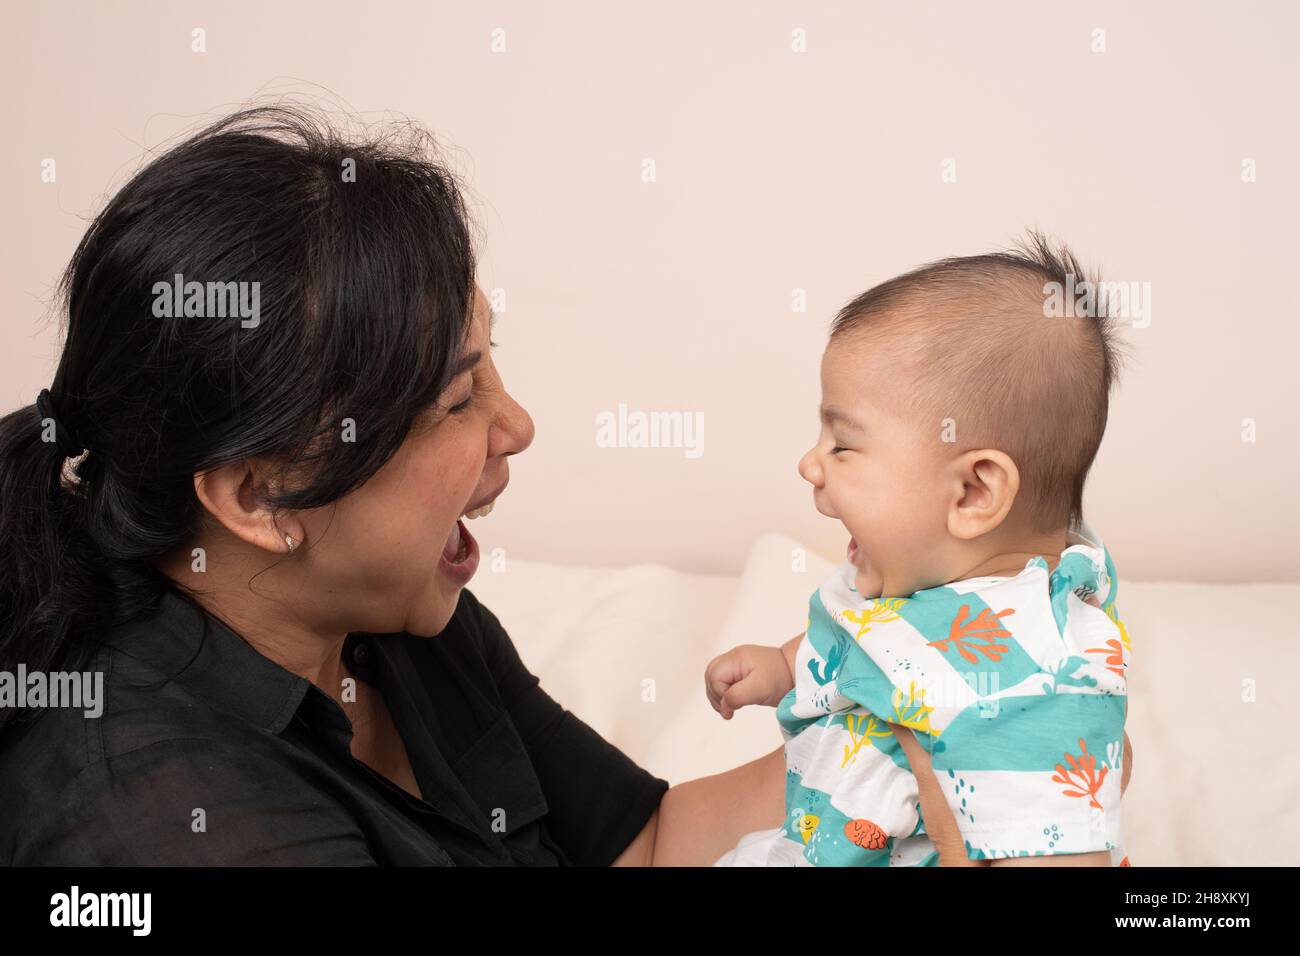 3 meses de edad bebé niño interacción con la madre que coincide con las expresiones, reír, boca abierta Foto de stock